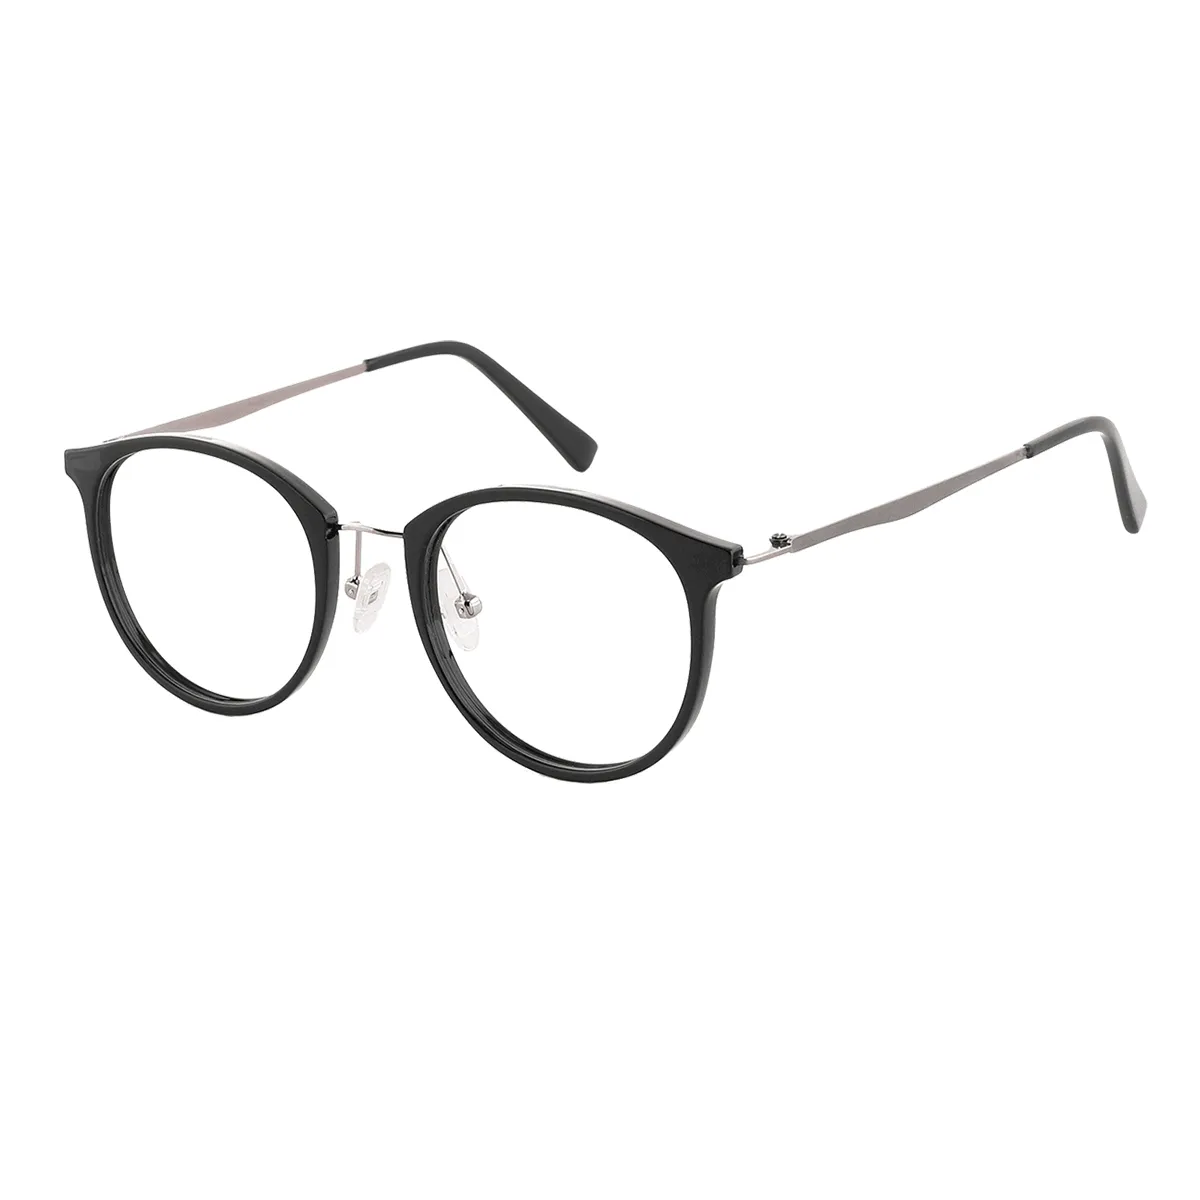 Janet - Round black/Gray Glasses for Women - EFE